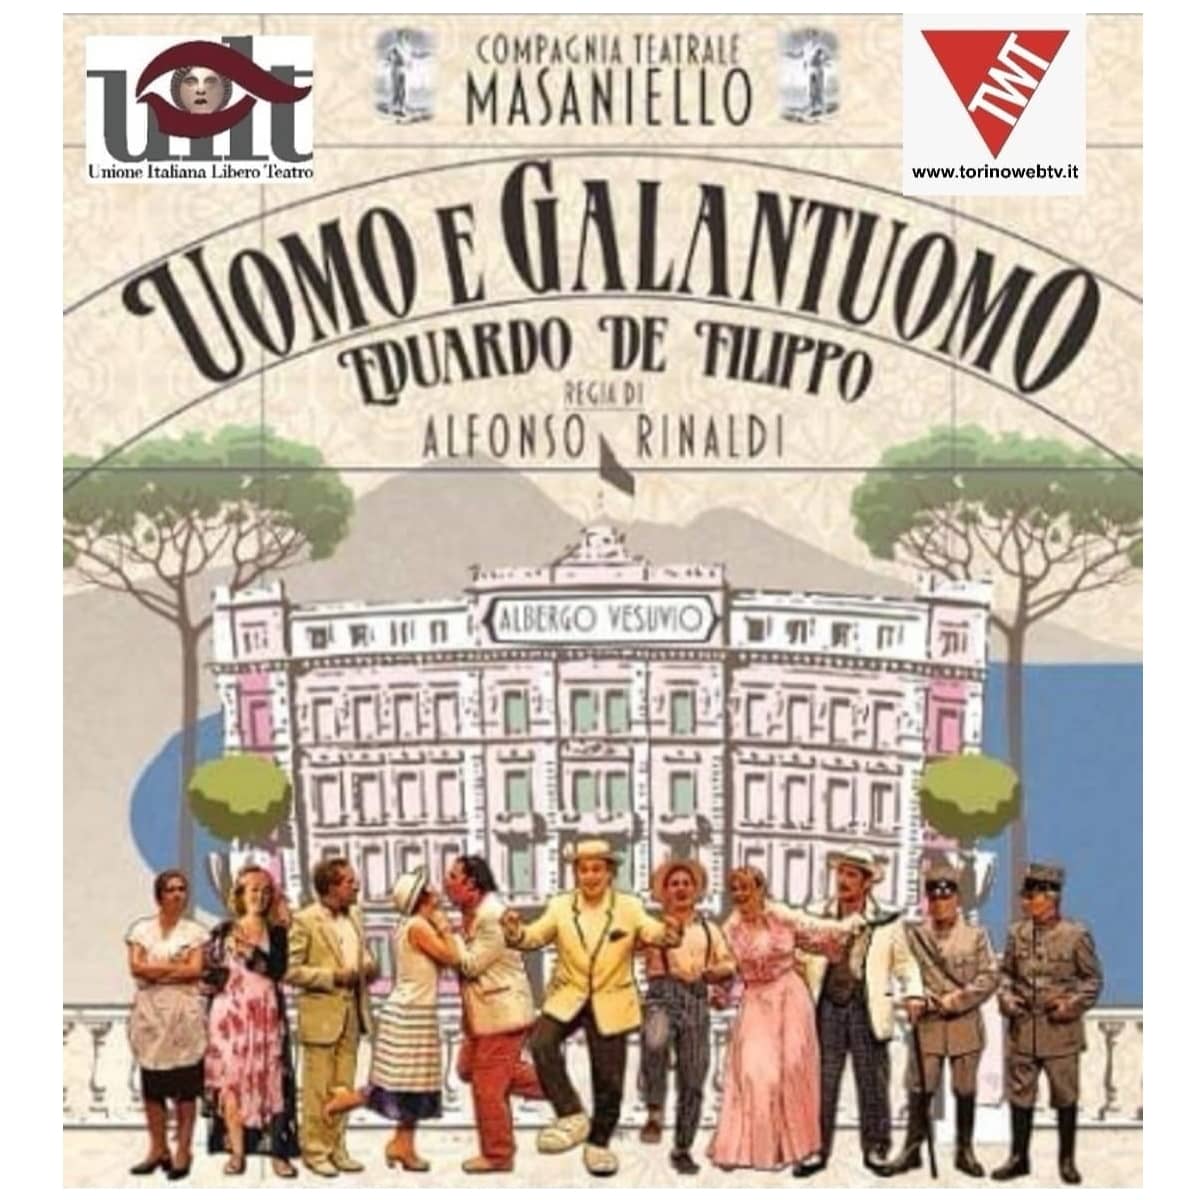 Compagnia Teatrale "Masaniello" - Torino